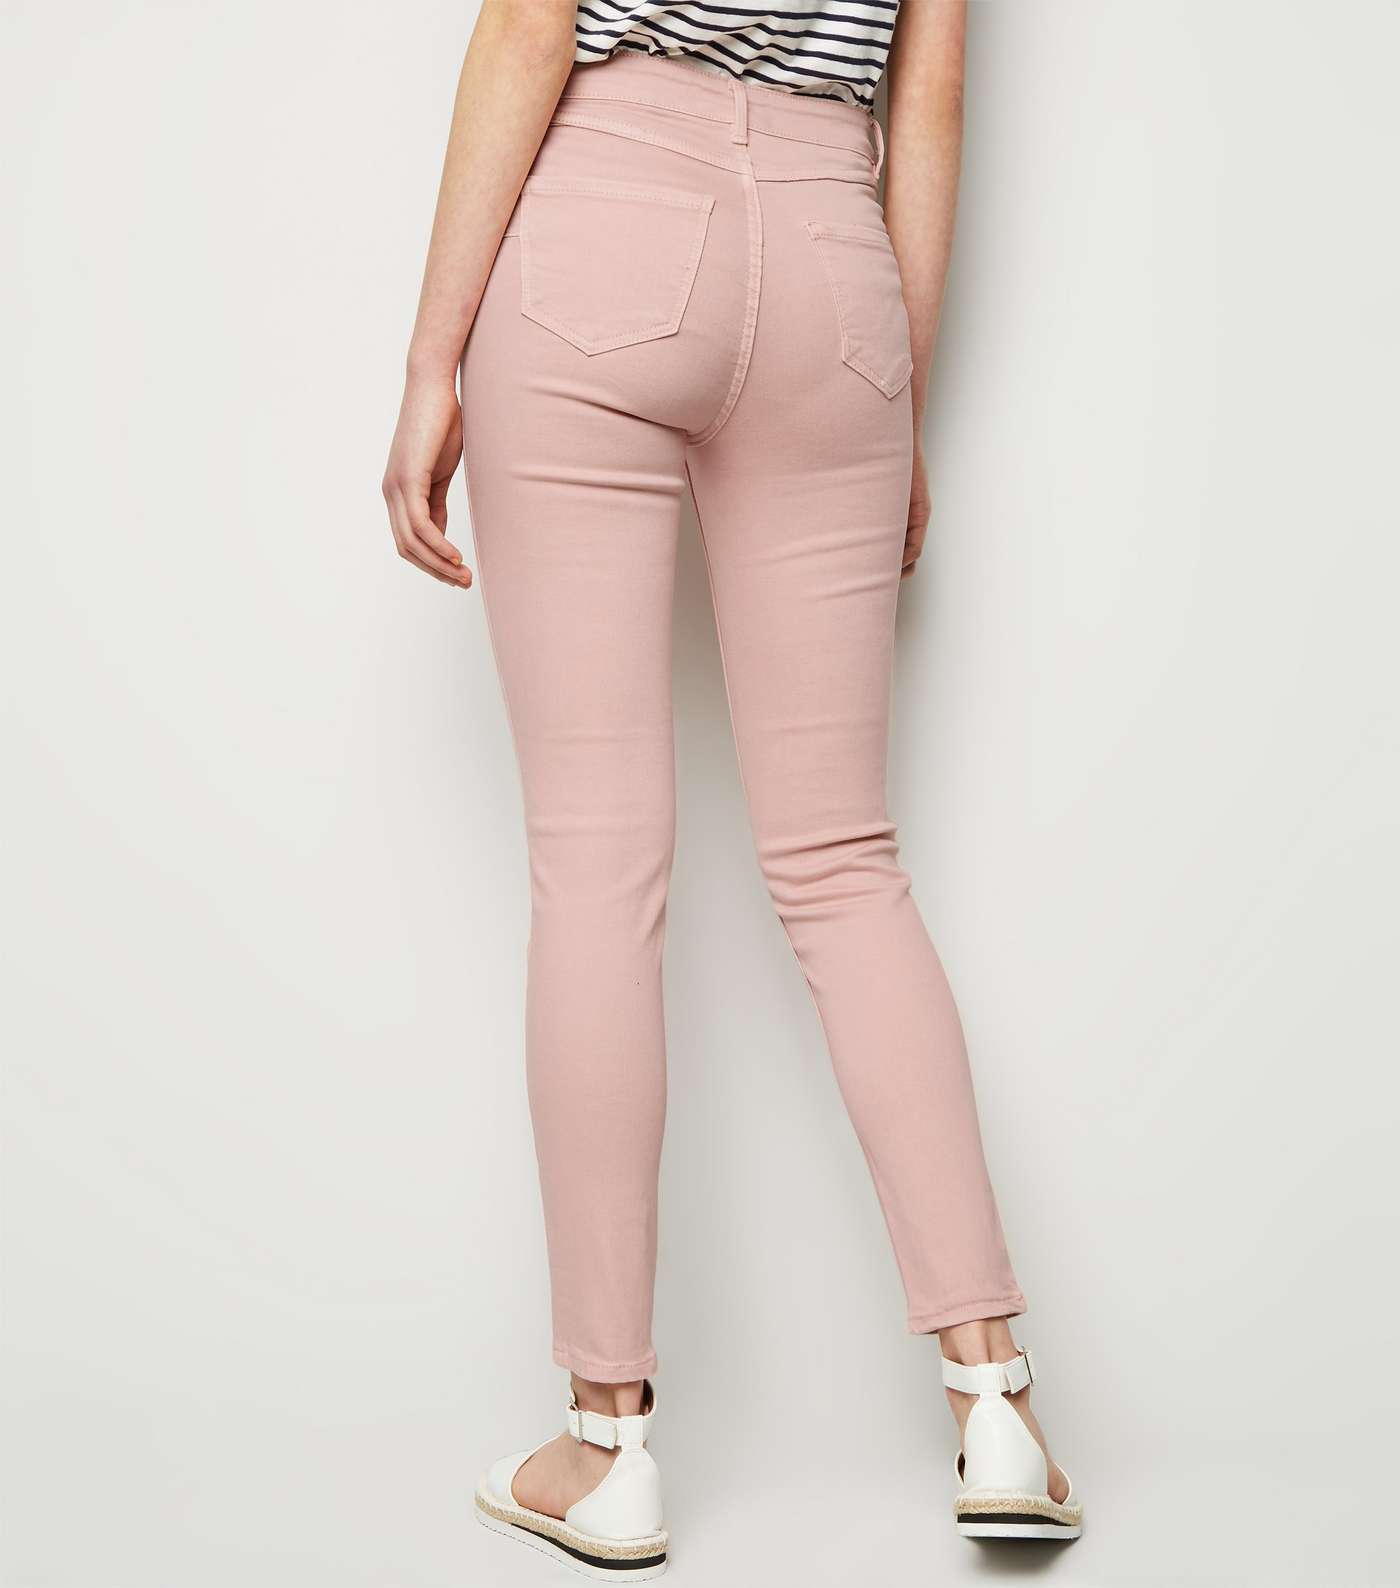 Pink High Waist 'Lift & Shape' Skinny Jeans Image 5